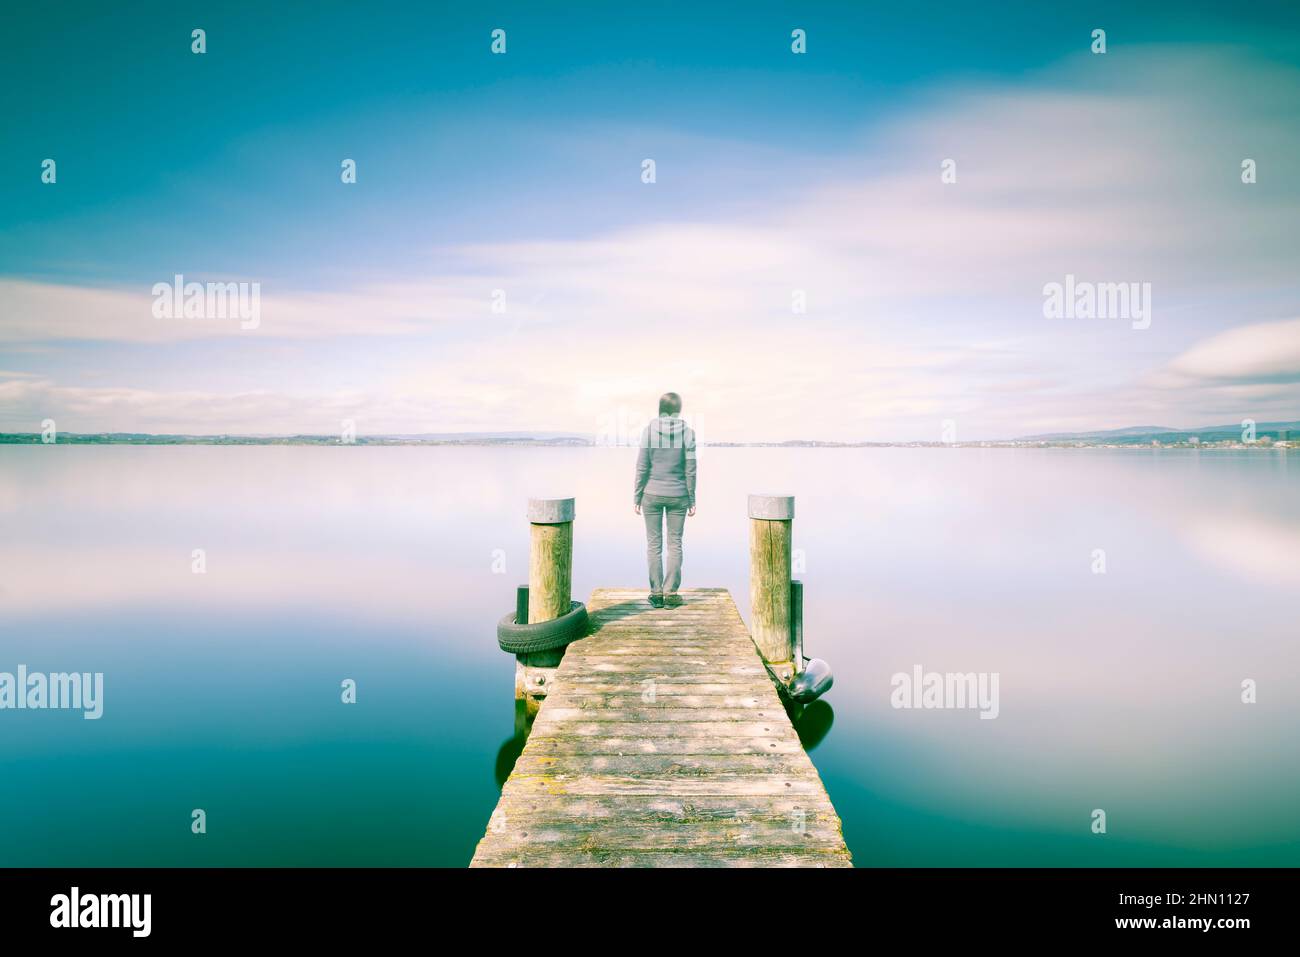 Doppelte Belichtung. Weibliche Figur auf einem hölzernen Steg. Das Ufer des Sees, eine lange Exposition. Minimalismus, Selbstreflex, Meditation. Stockfoto